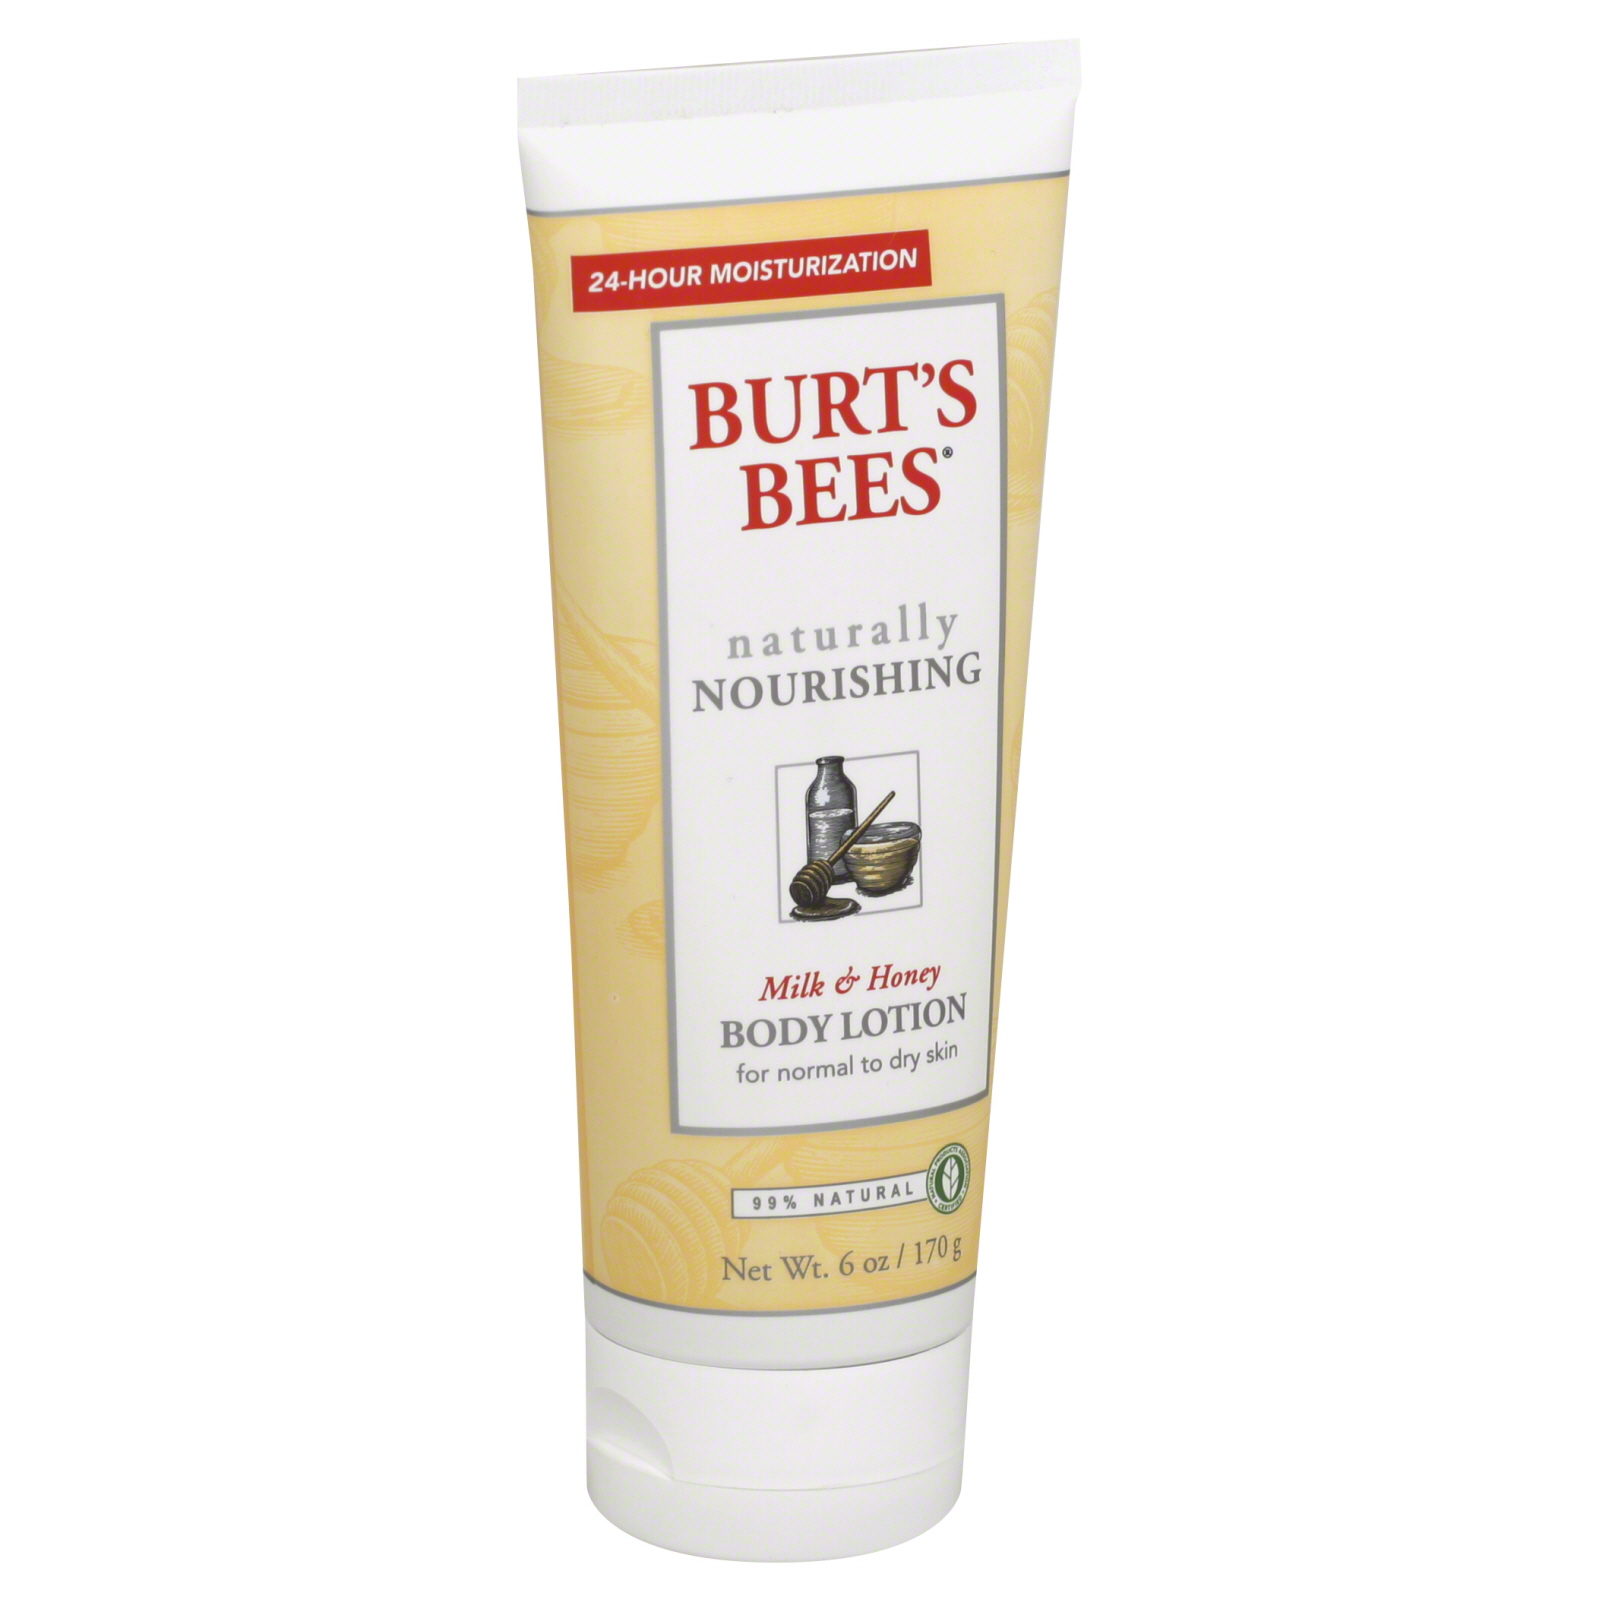 Burt's Bees Body Lotion, Naturally Nourishing, Milk & Honey, 6 oz.